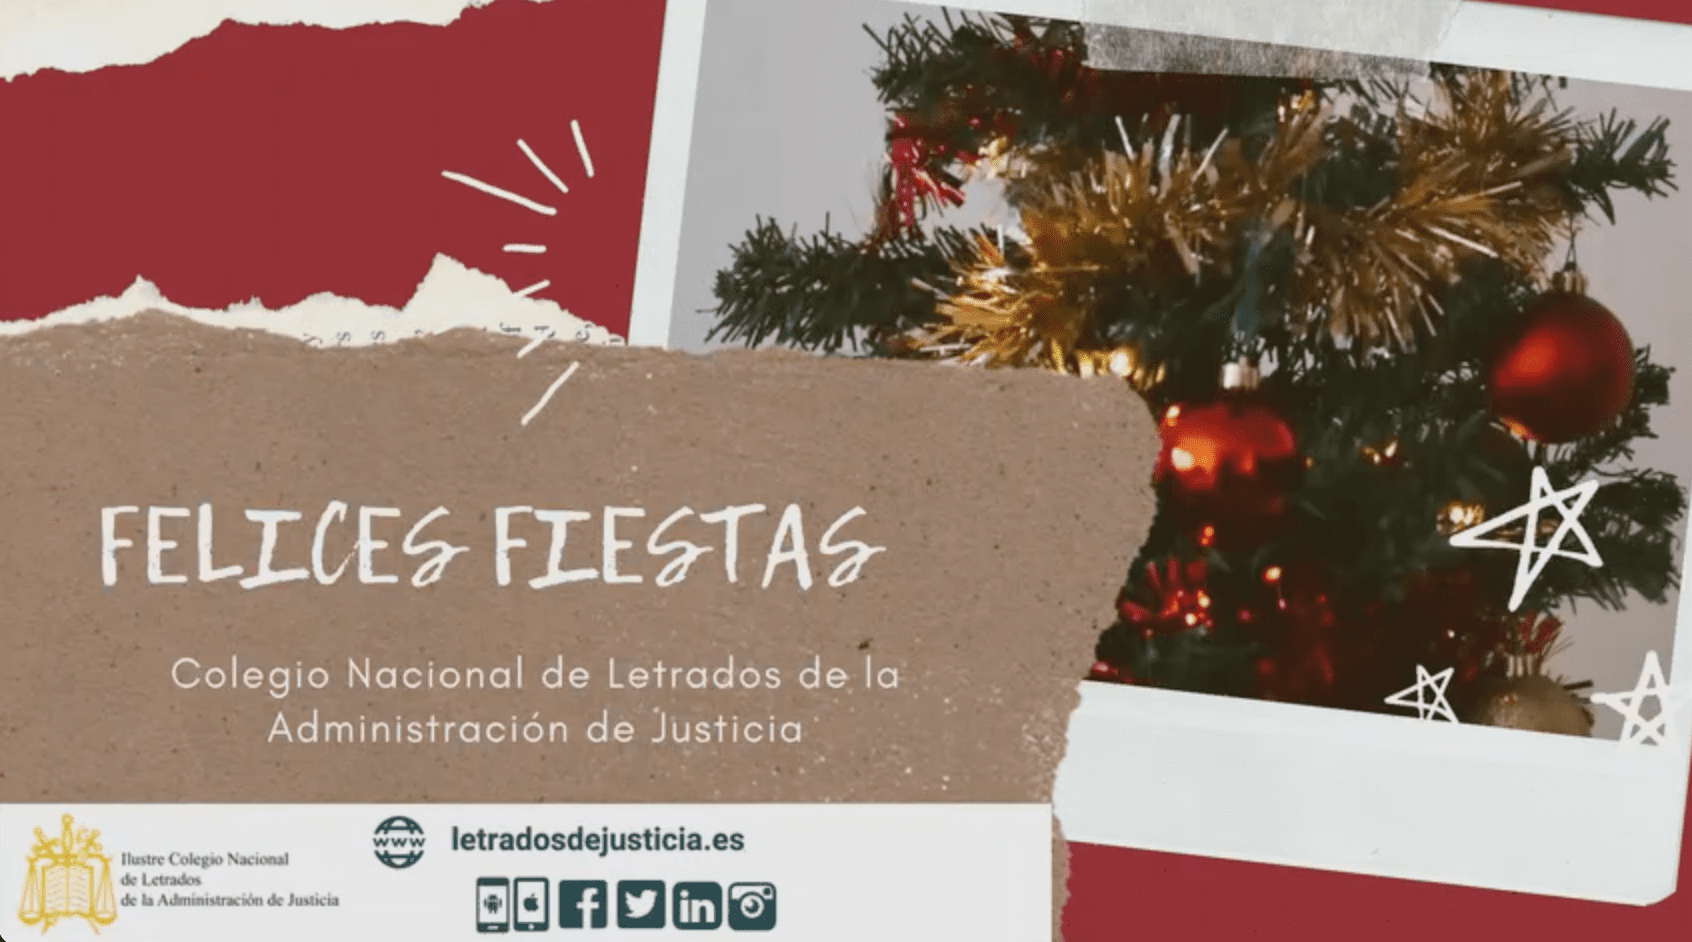 El Colegio Nacional de Letrados de la Administración de Justicia os desea Felices Fiestas